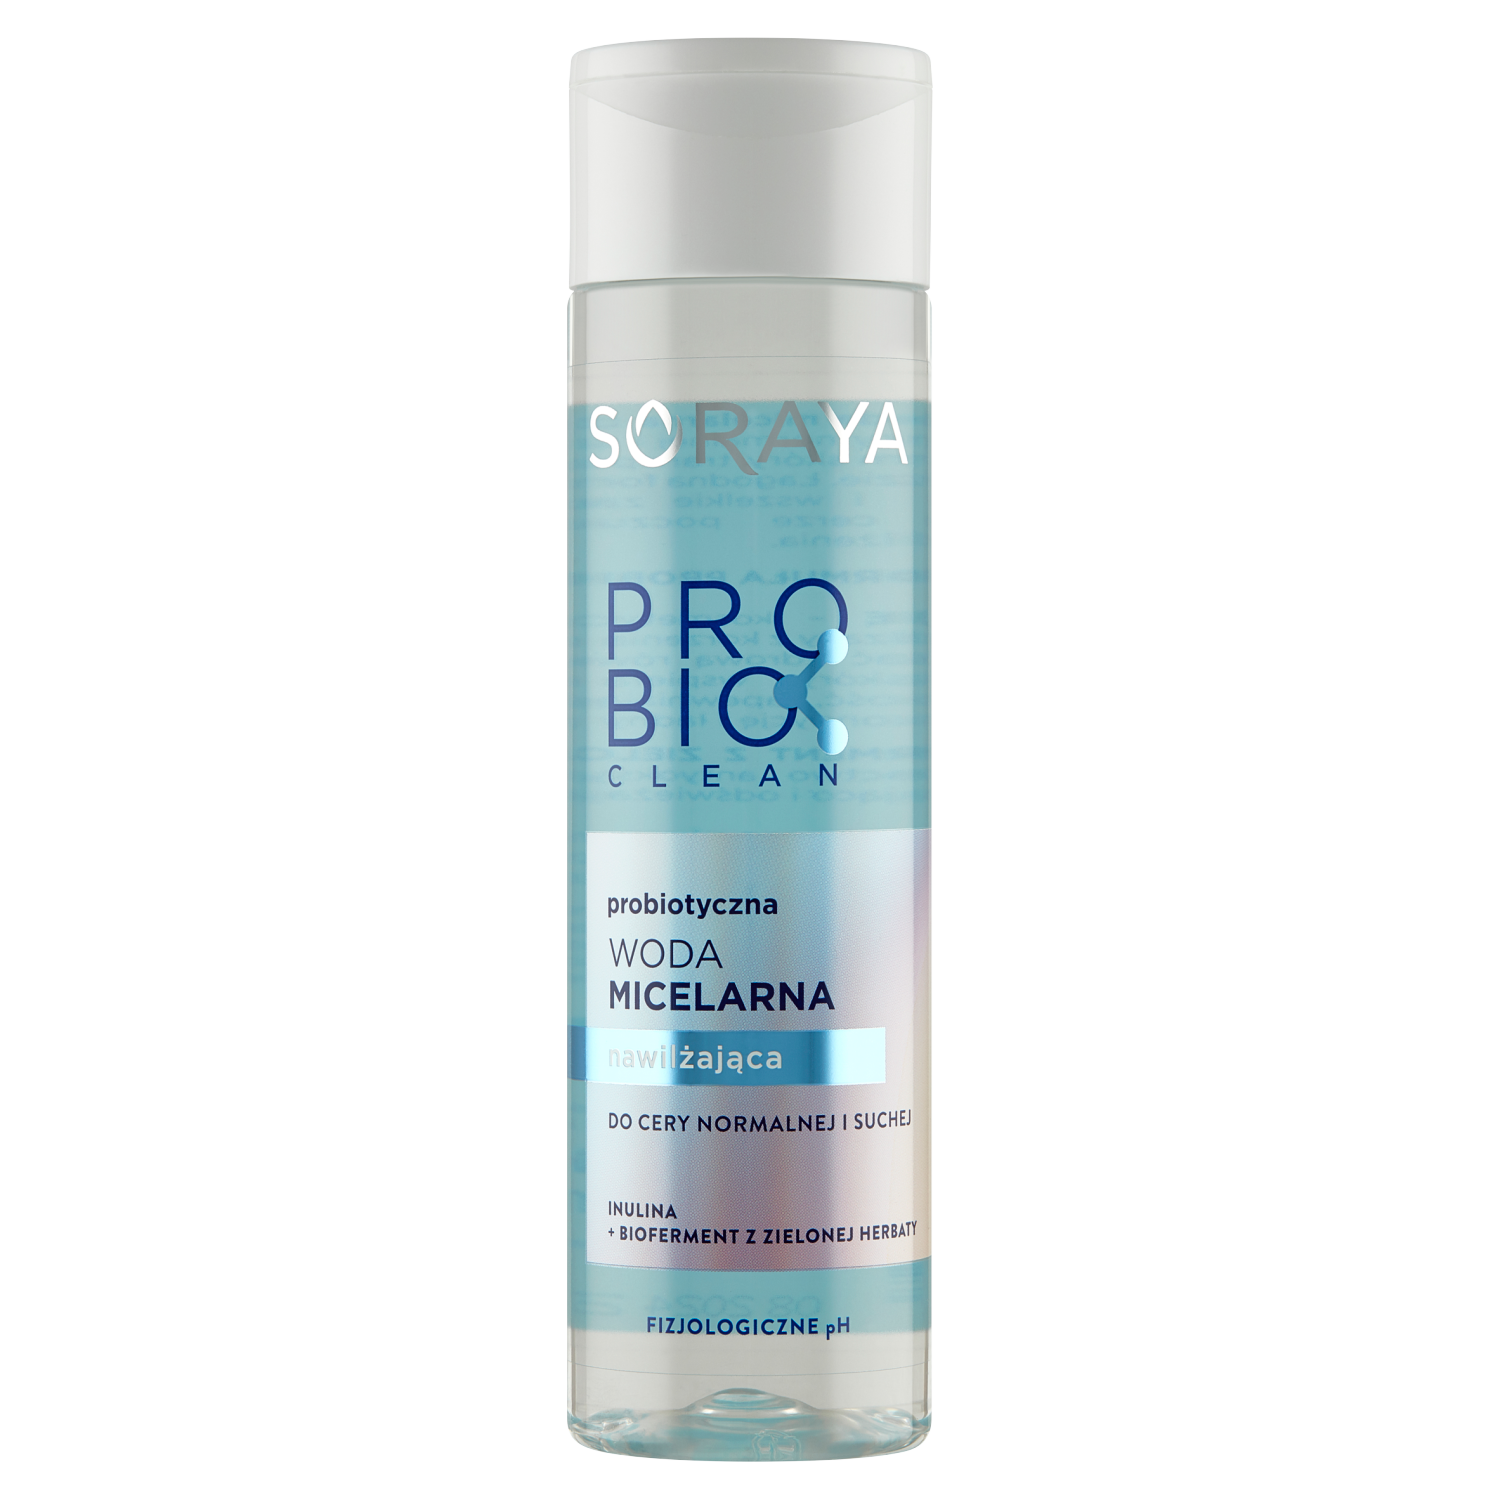 Soraya Probio Clean увлажняющая мицеллярная вода для лица, 250 мл